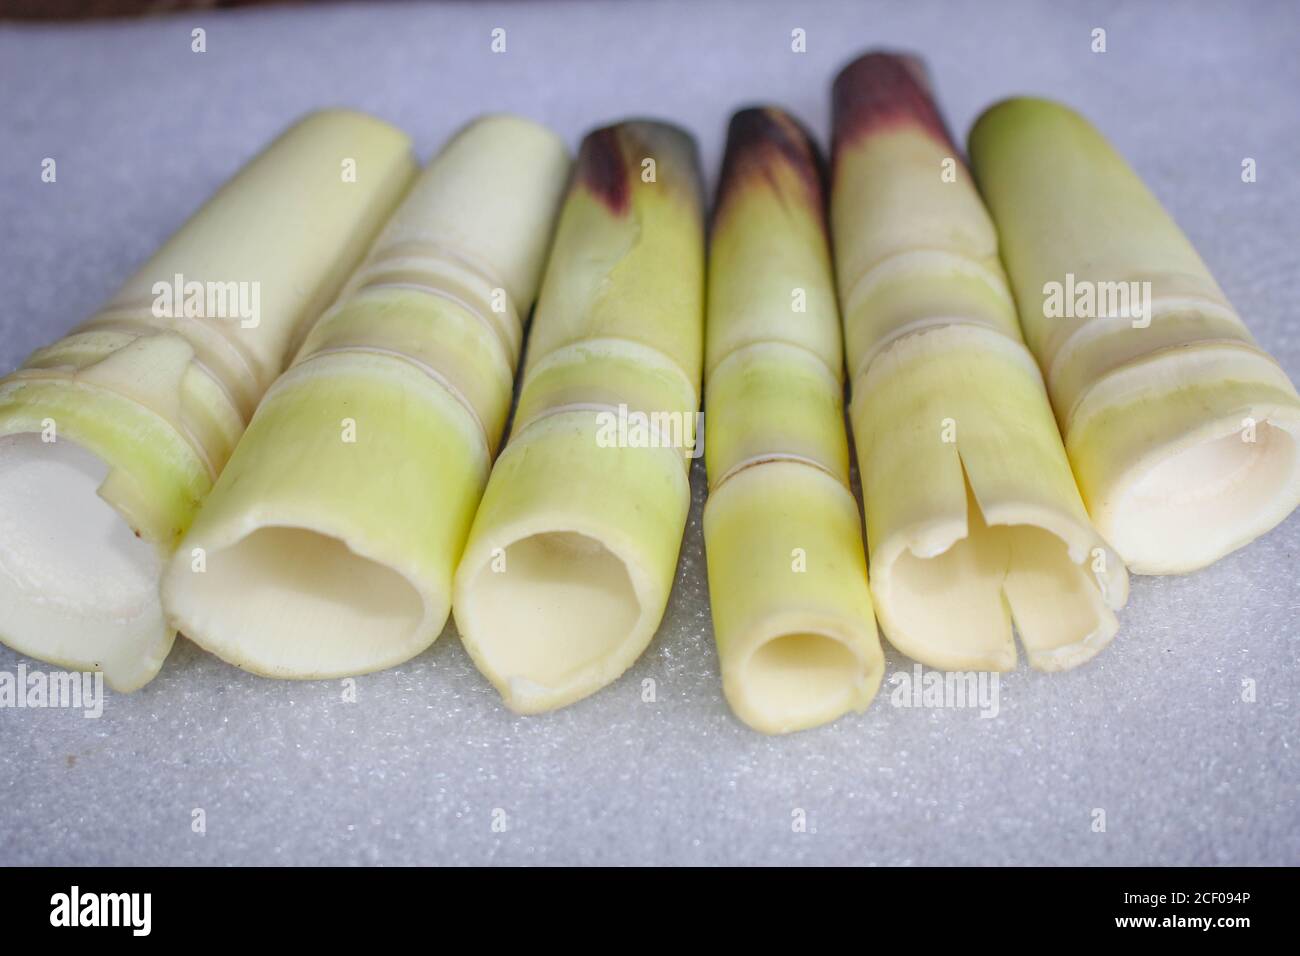 Bambus schießt geschälte köstliche Lebensmittel auf weißem Hintergrund gesetzt Stockfoto